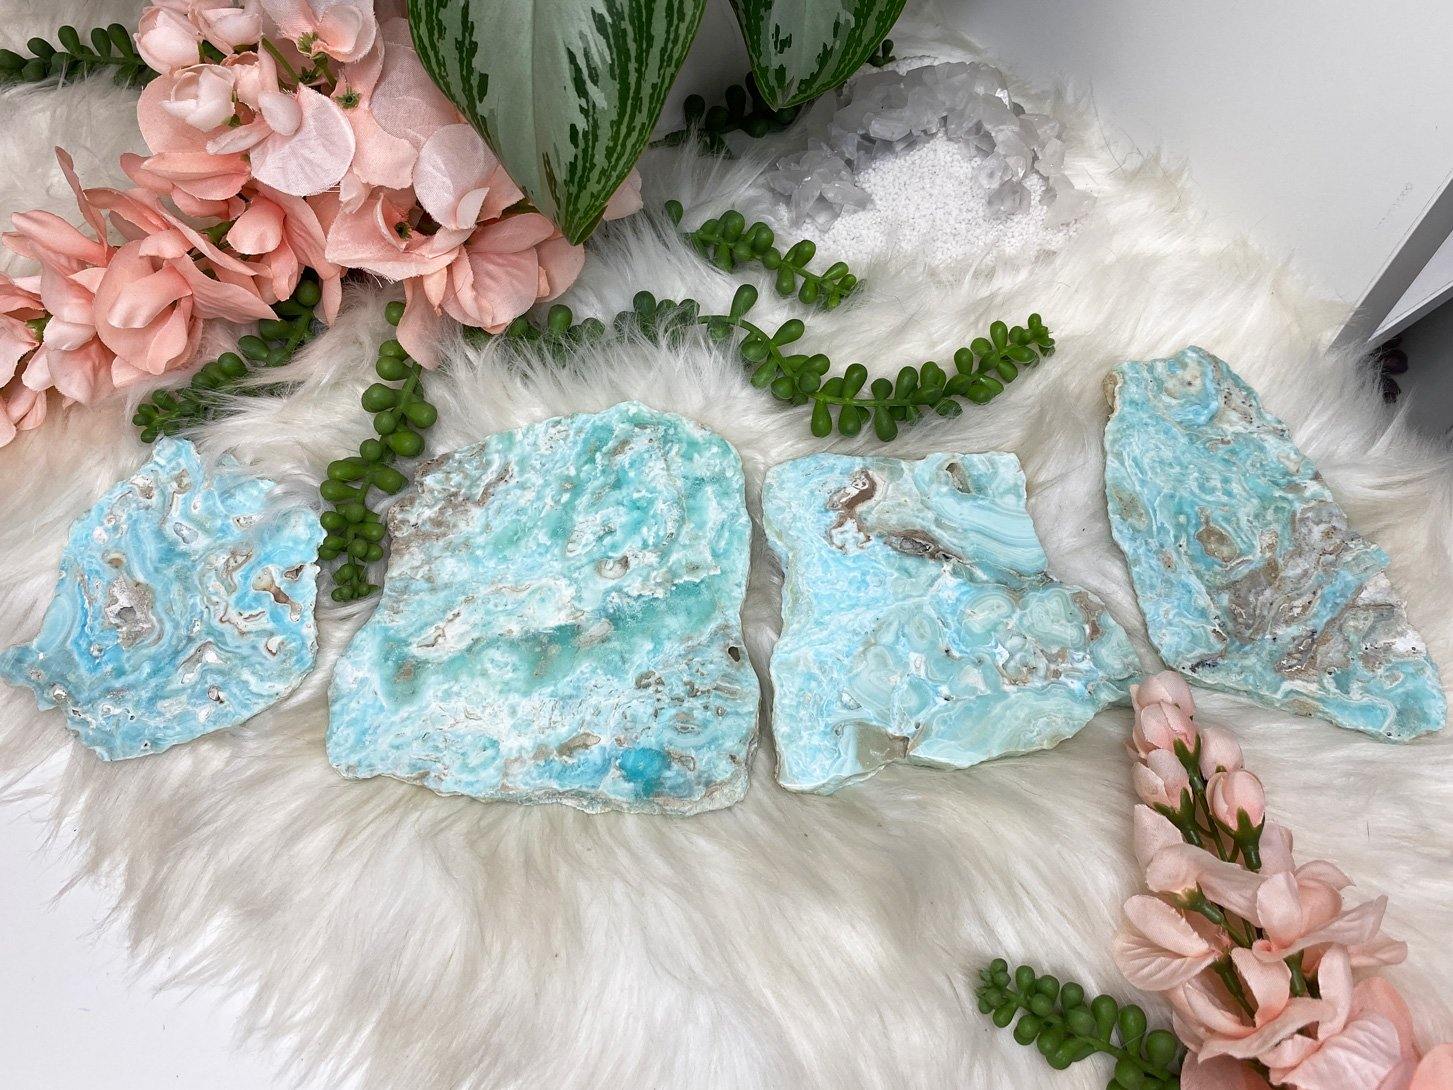 Beautiful striking teal blue aragonite crystal slices.